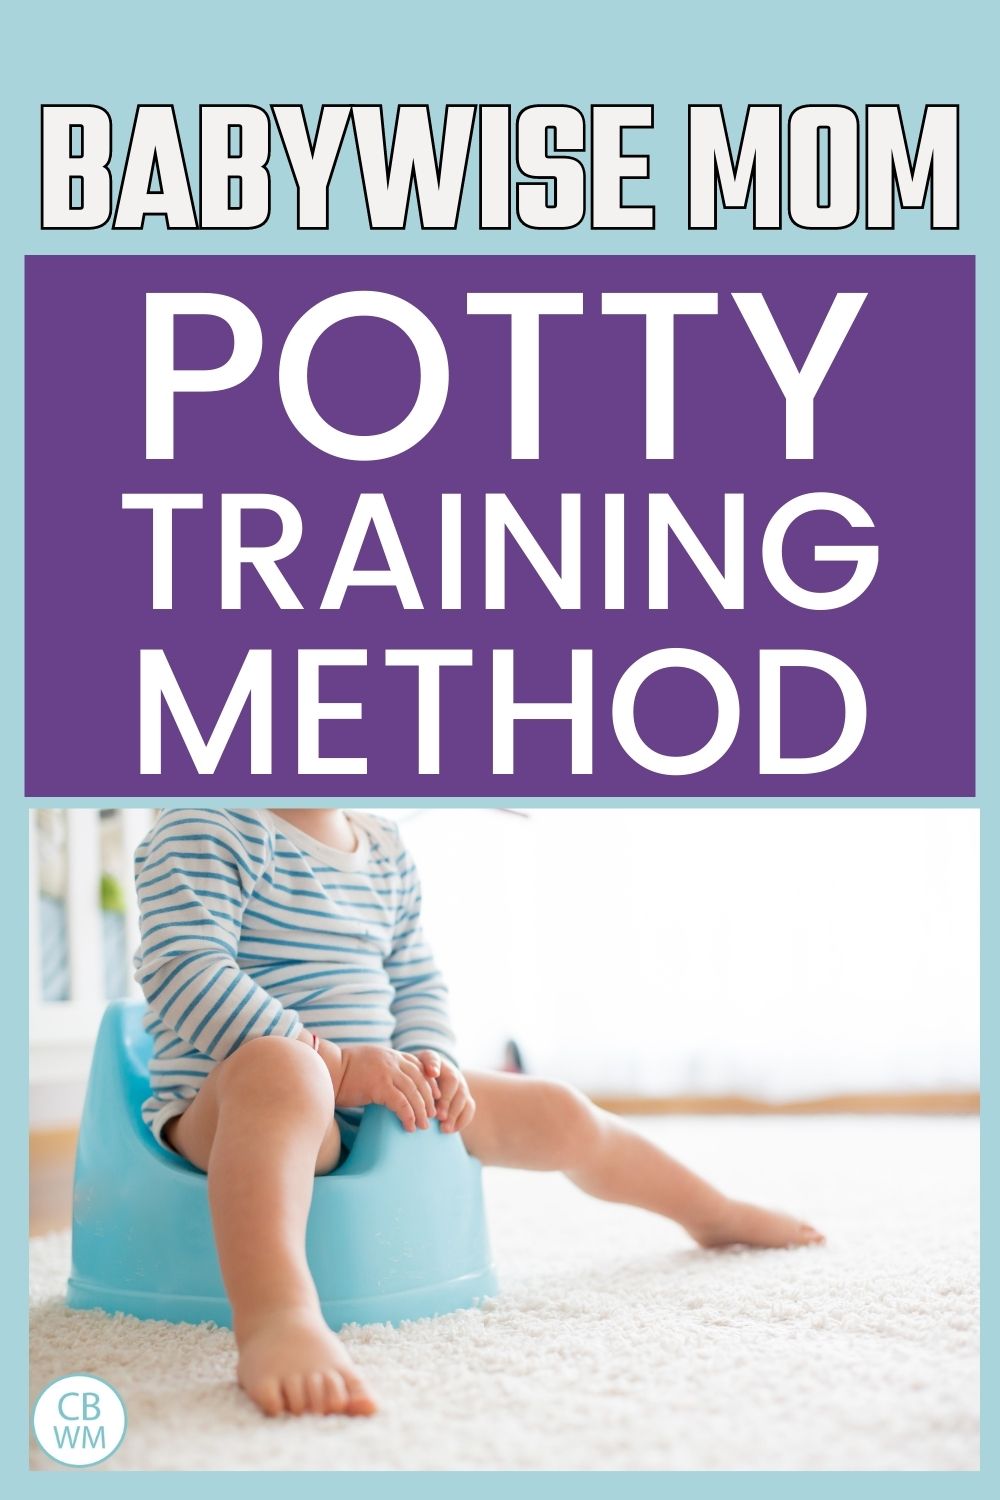 Babywise Mom potty training method